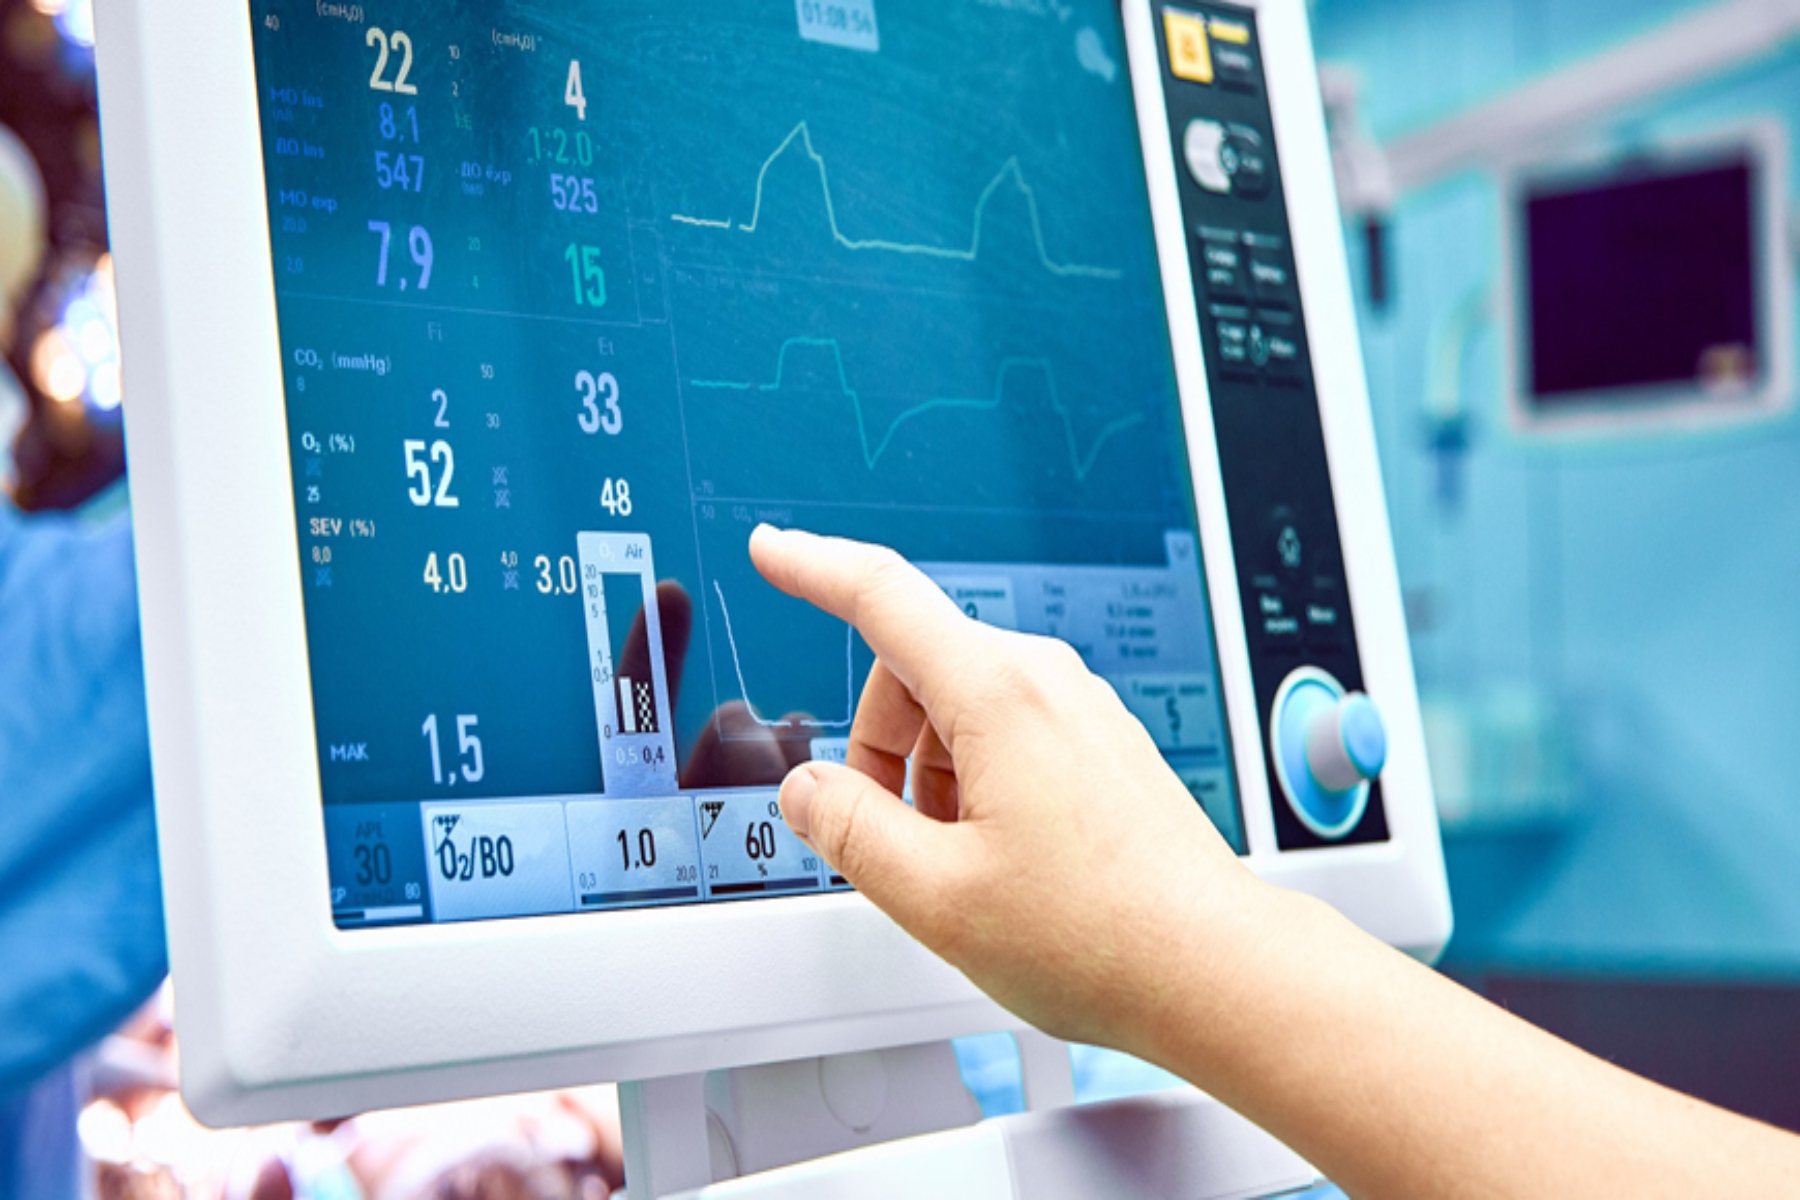 Παρακολούθηση ασθενών: Πώς θα φέρει επανάσταση στην υγειονομική περίθαλψη;